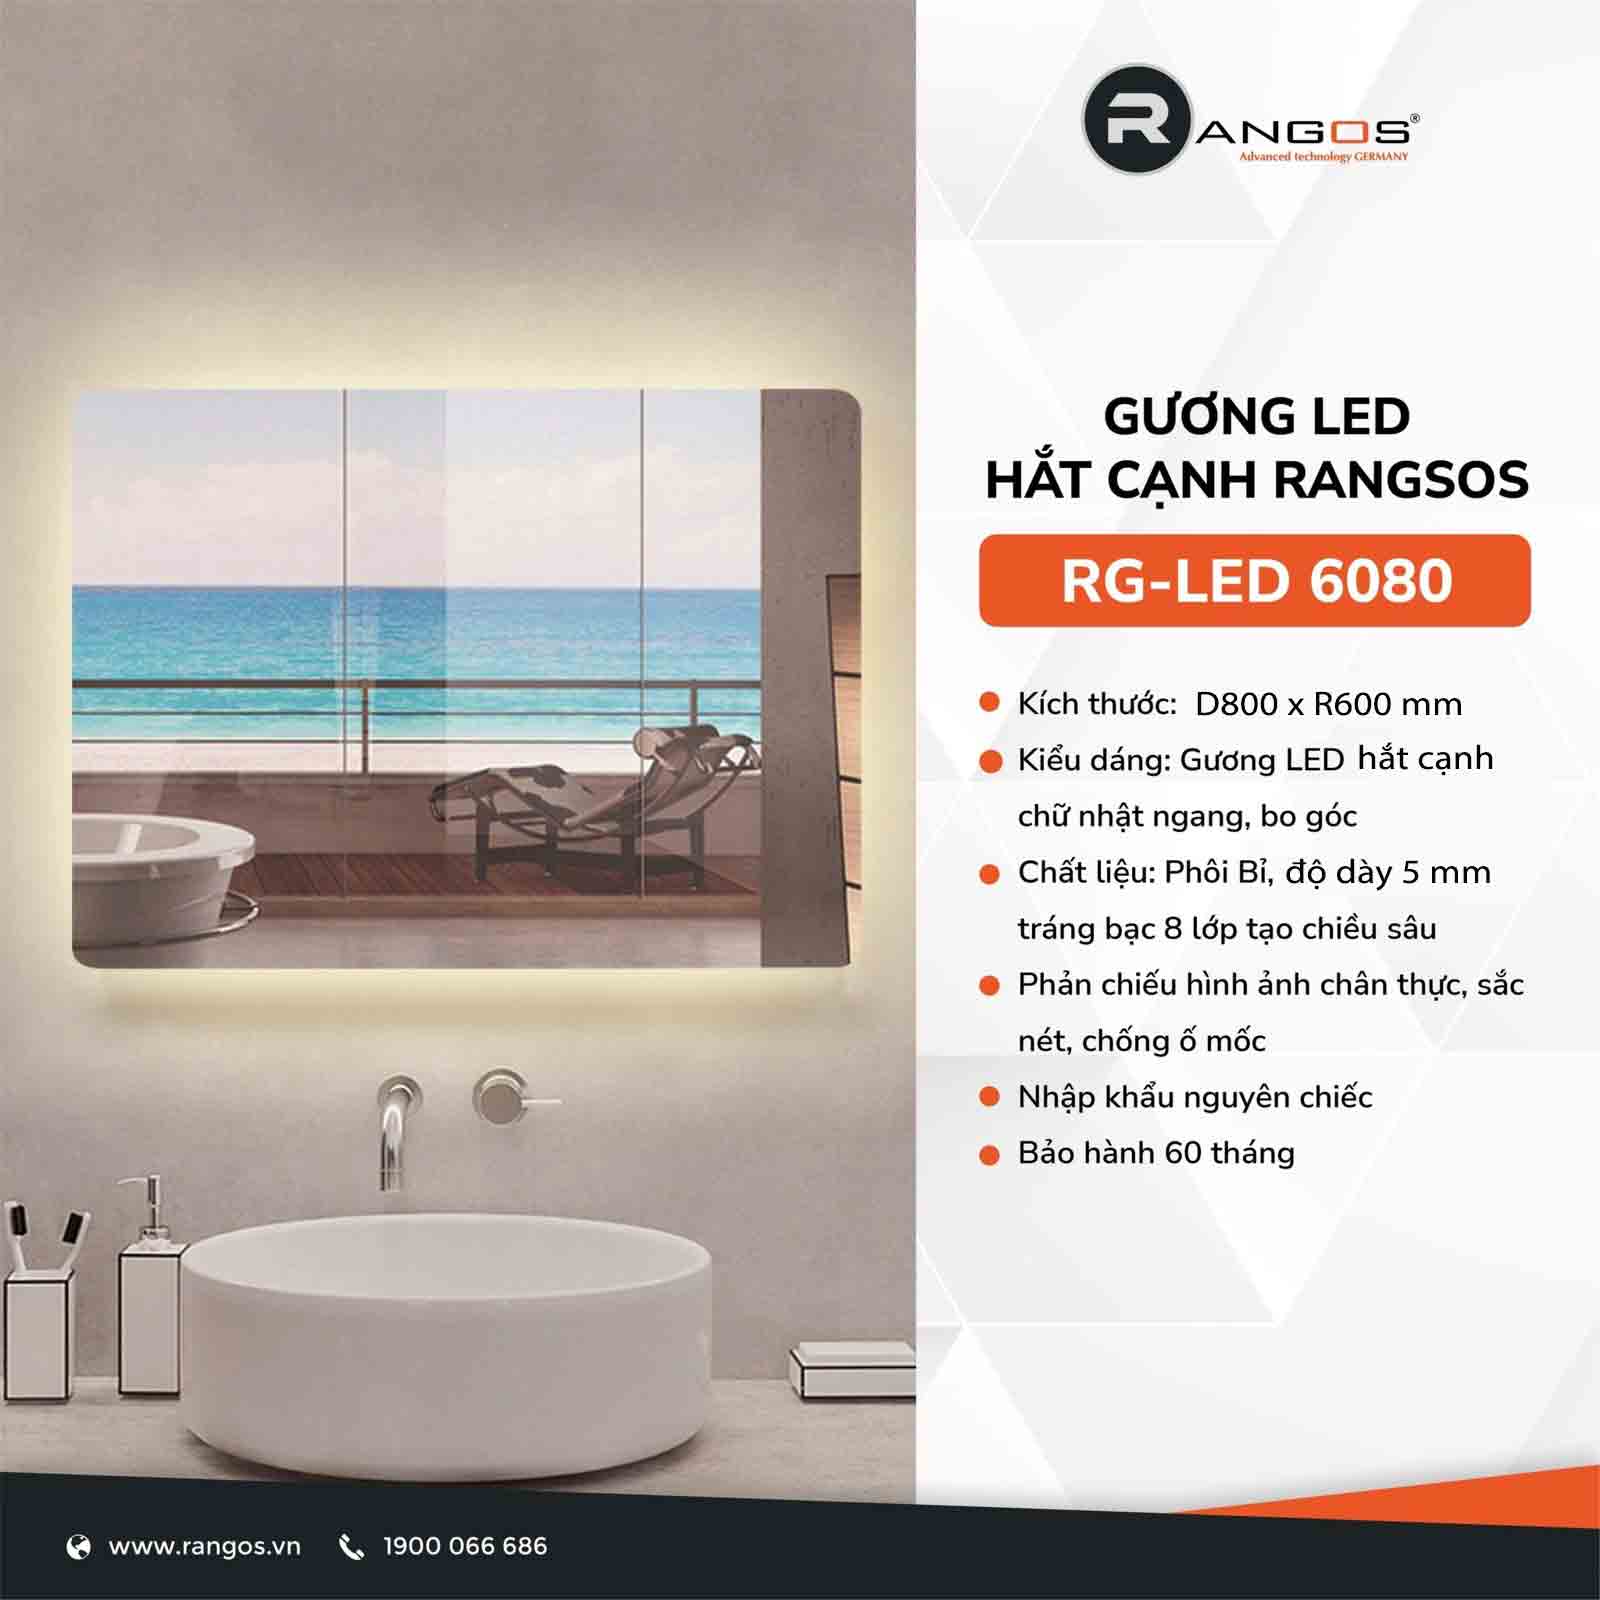 Gương led hắt cạnh Rangos RG-LED 6080